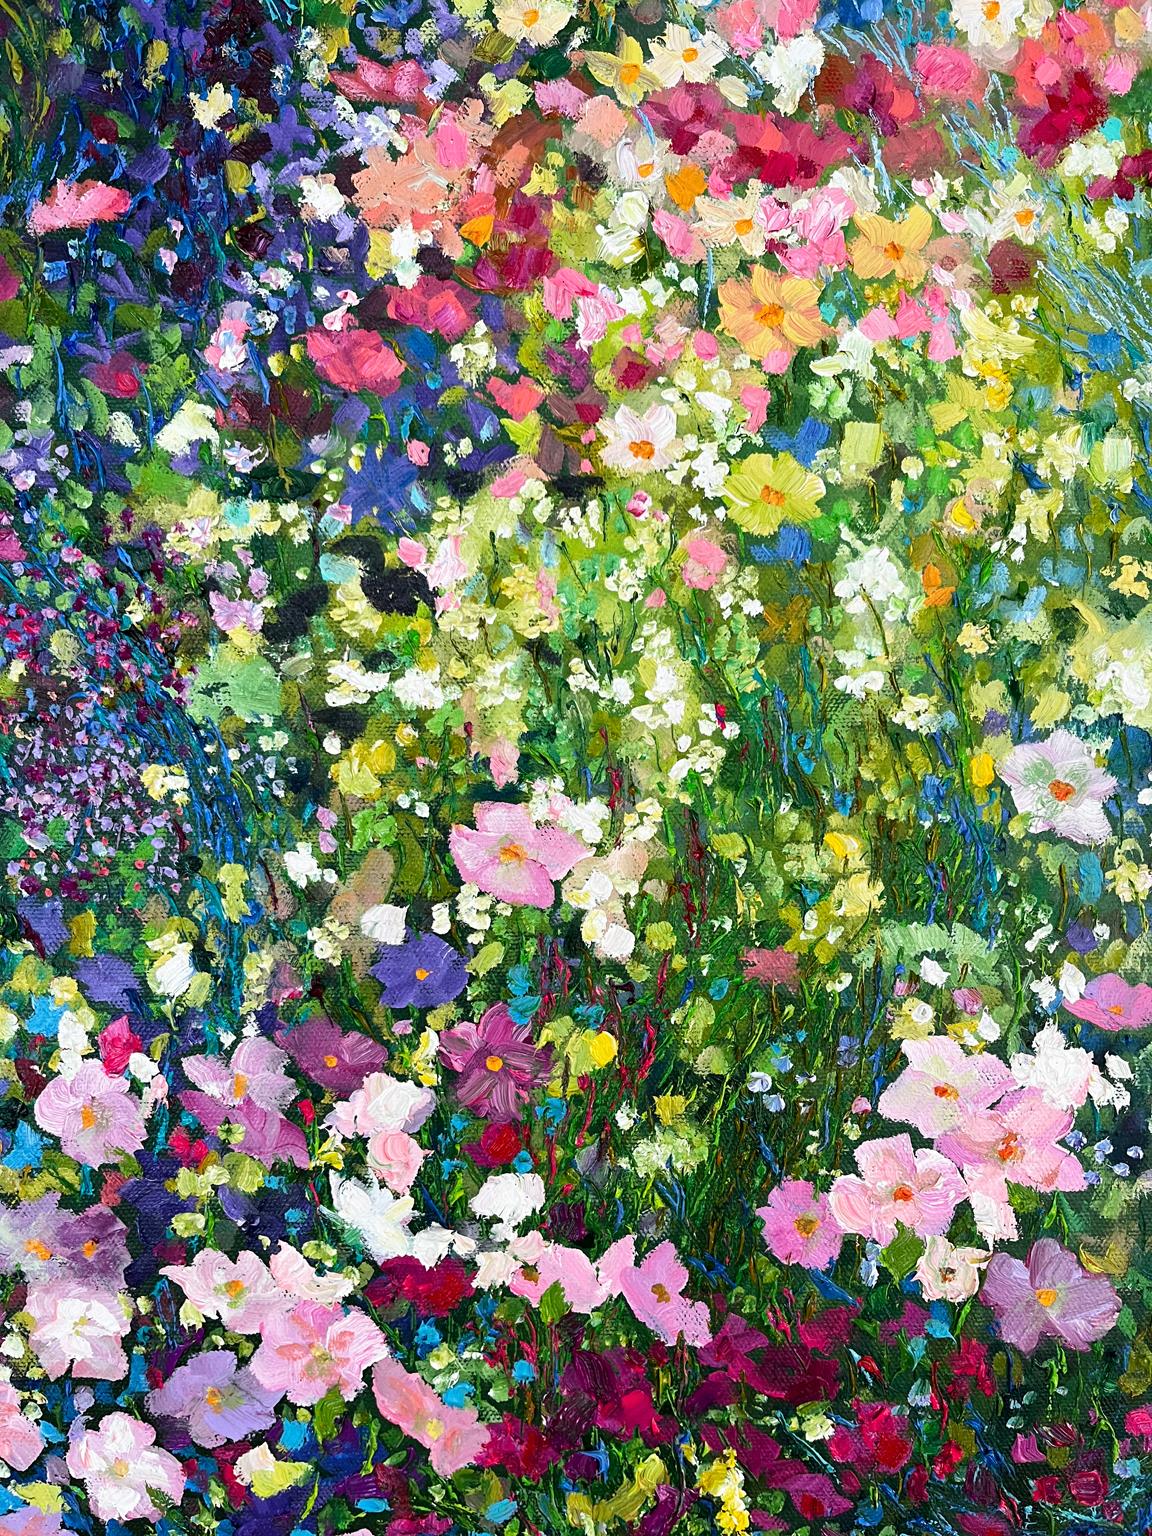 <p>Kommentare des Künstlers<br>Im Herzen von Paris liegt ein abgelegener Garten, in dem die Morgensonne brennt. Leuchtendes Blau, Grün und Violett mischen sich mit einem spontanen Ausbruch von magentafarbenen und rosa Wildblumen. Dicke, wirbelnde